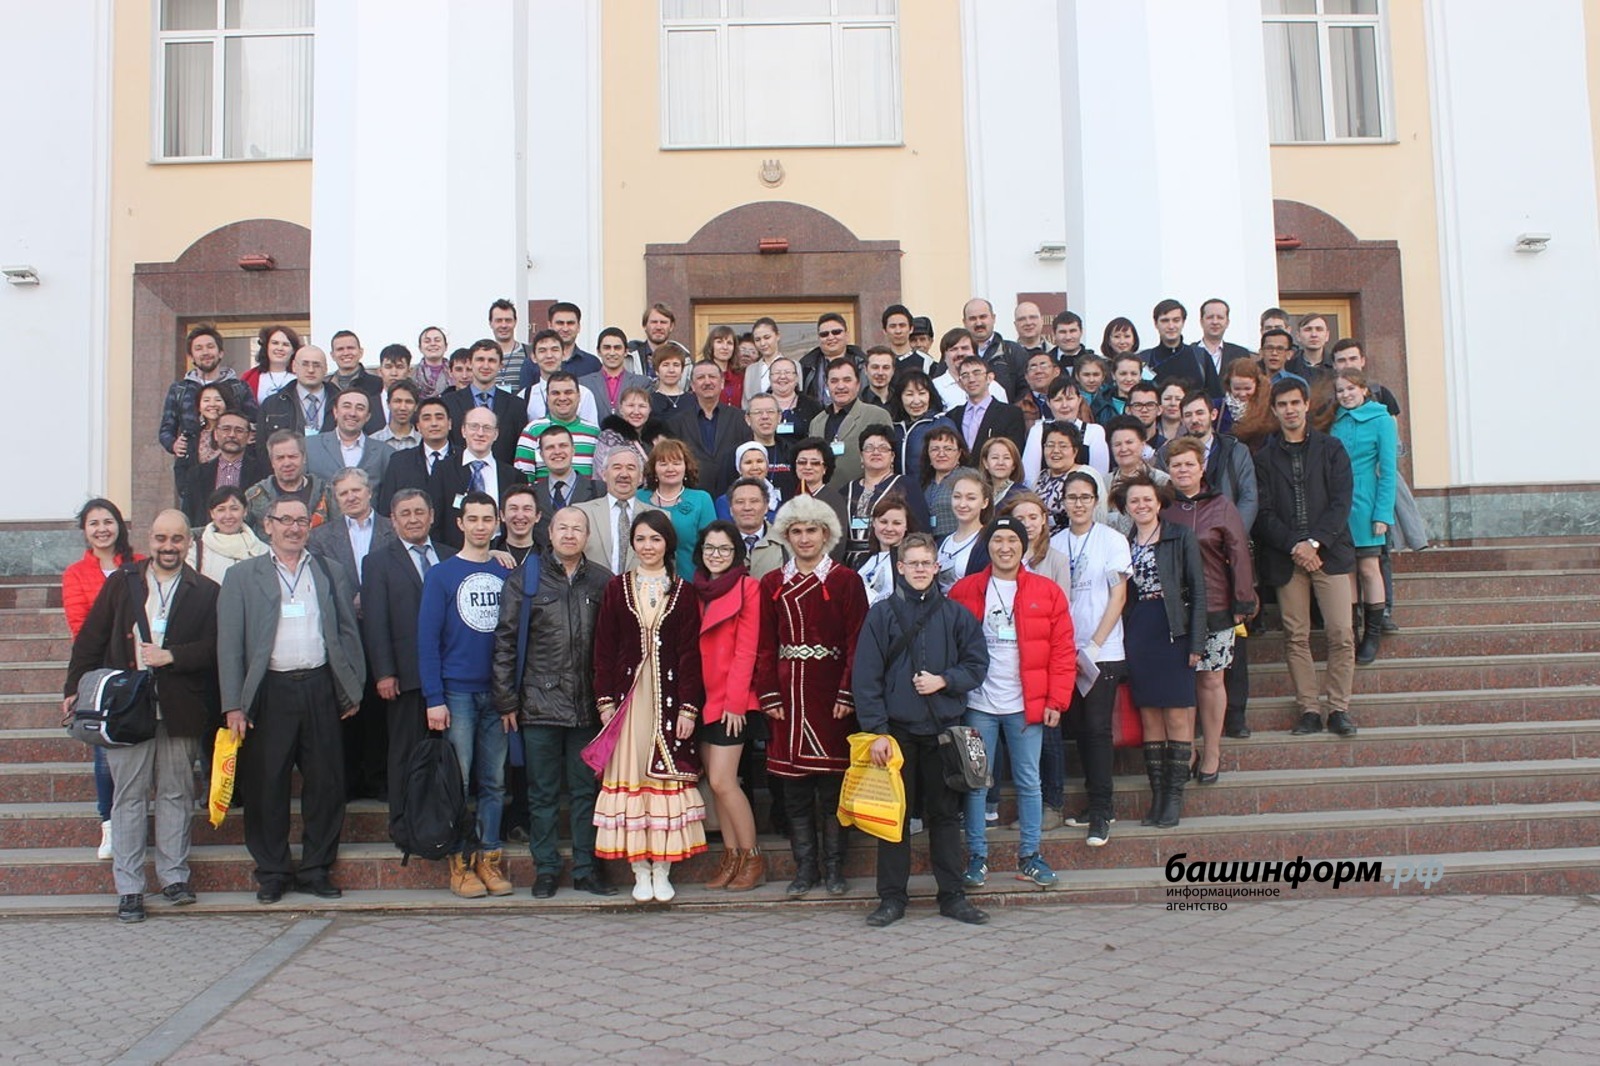 НП «Викимедиа РУ»  Участники 1-го форума башкирских википедистов. Уфа, Башгосуниверситет, 25 апреля 2015 г.